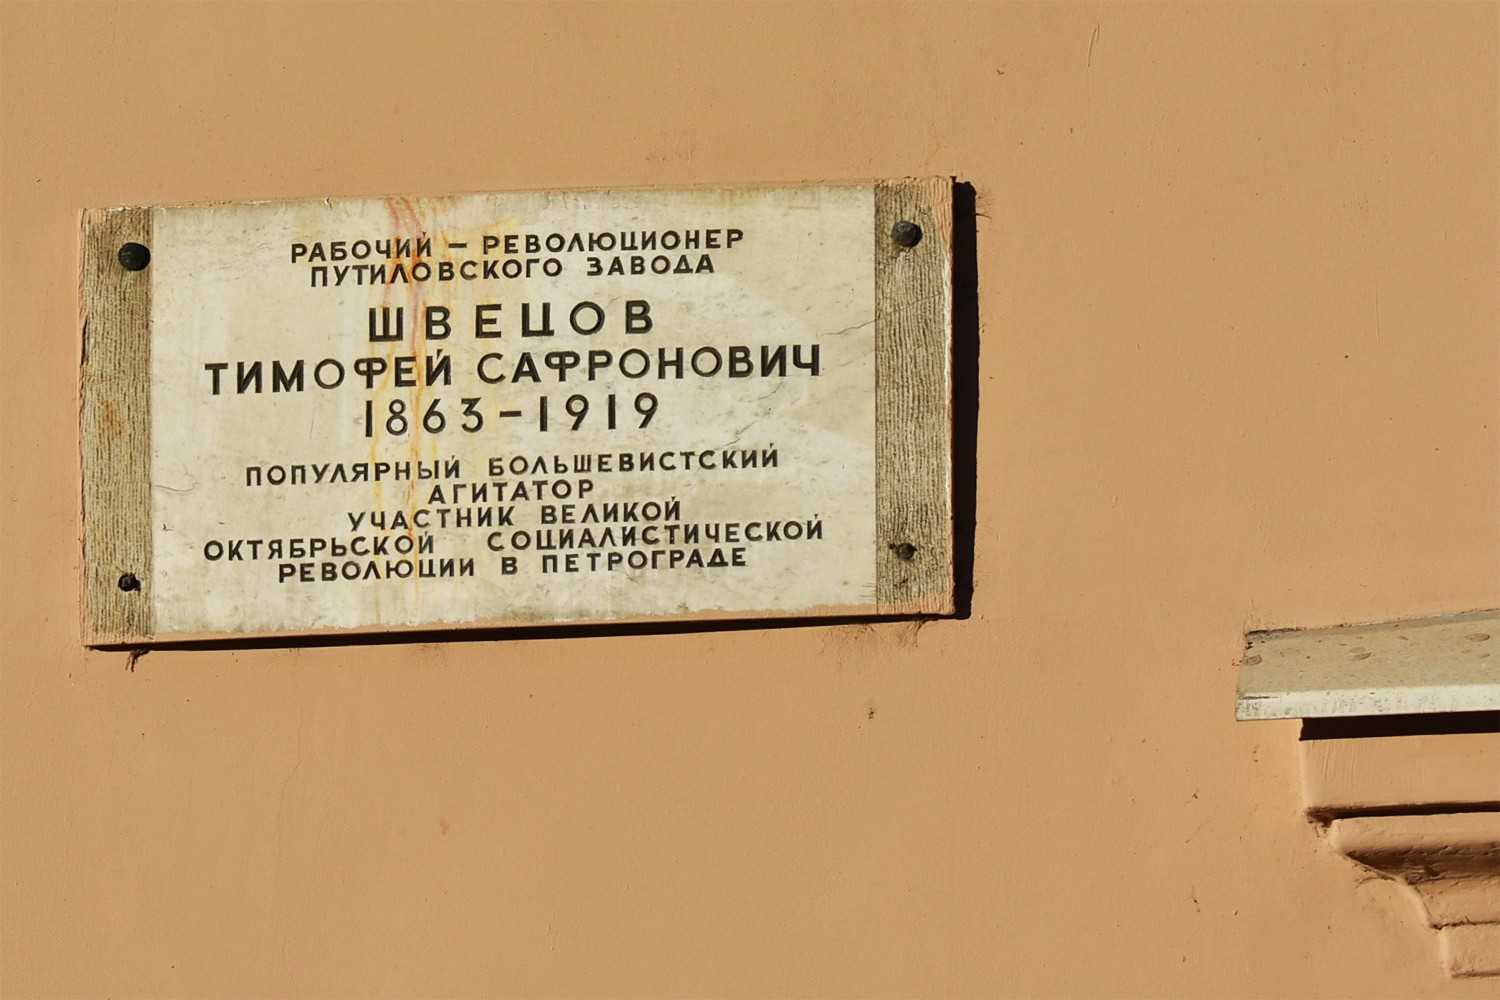 Sankt Petersburg, Проспект Стачек, 16 (подъезды 1-11). Sankt Petersburg — Memorial plaques